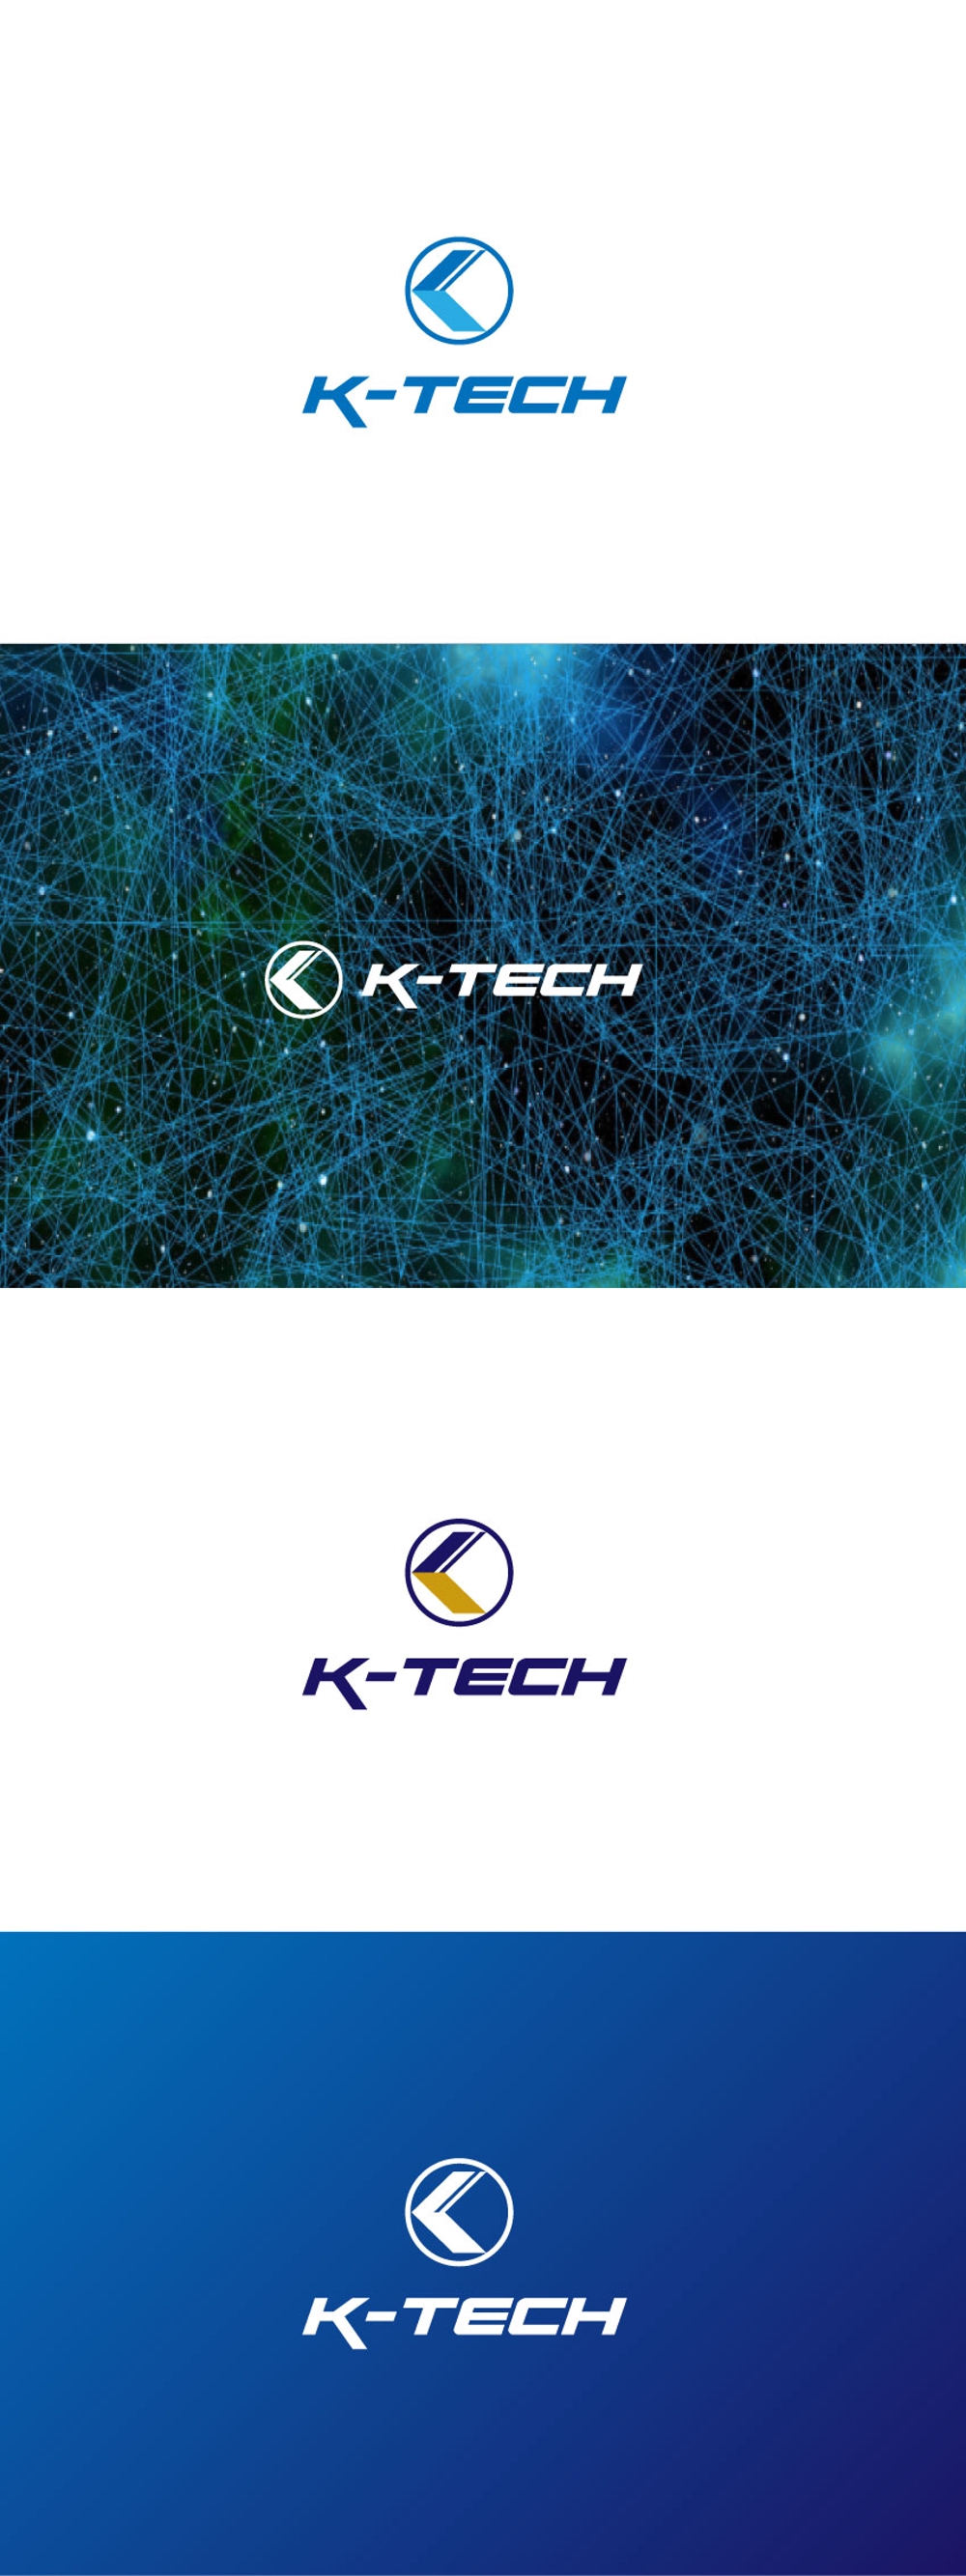 K-TECH-02.jpg